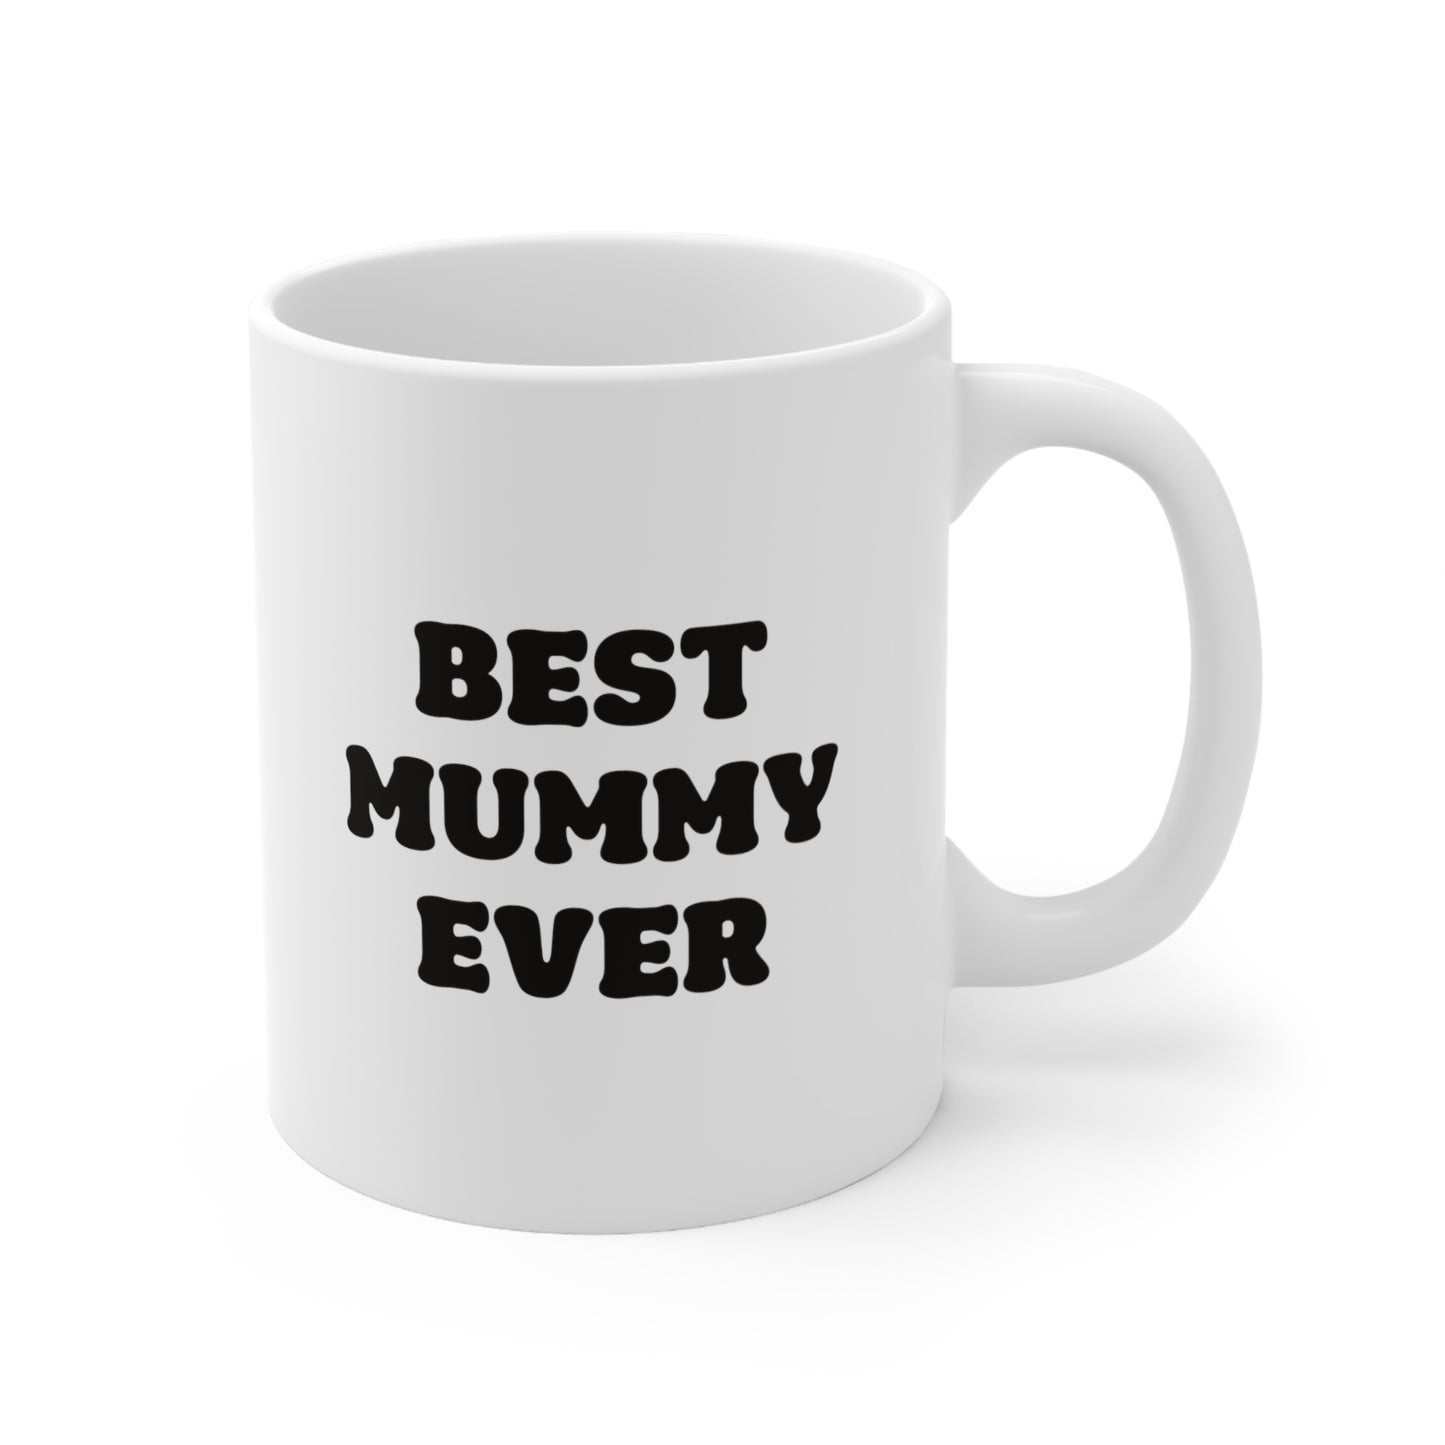 Best Mummy Ever Coffee Mug 11oz